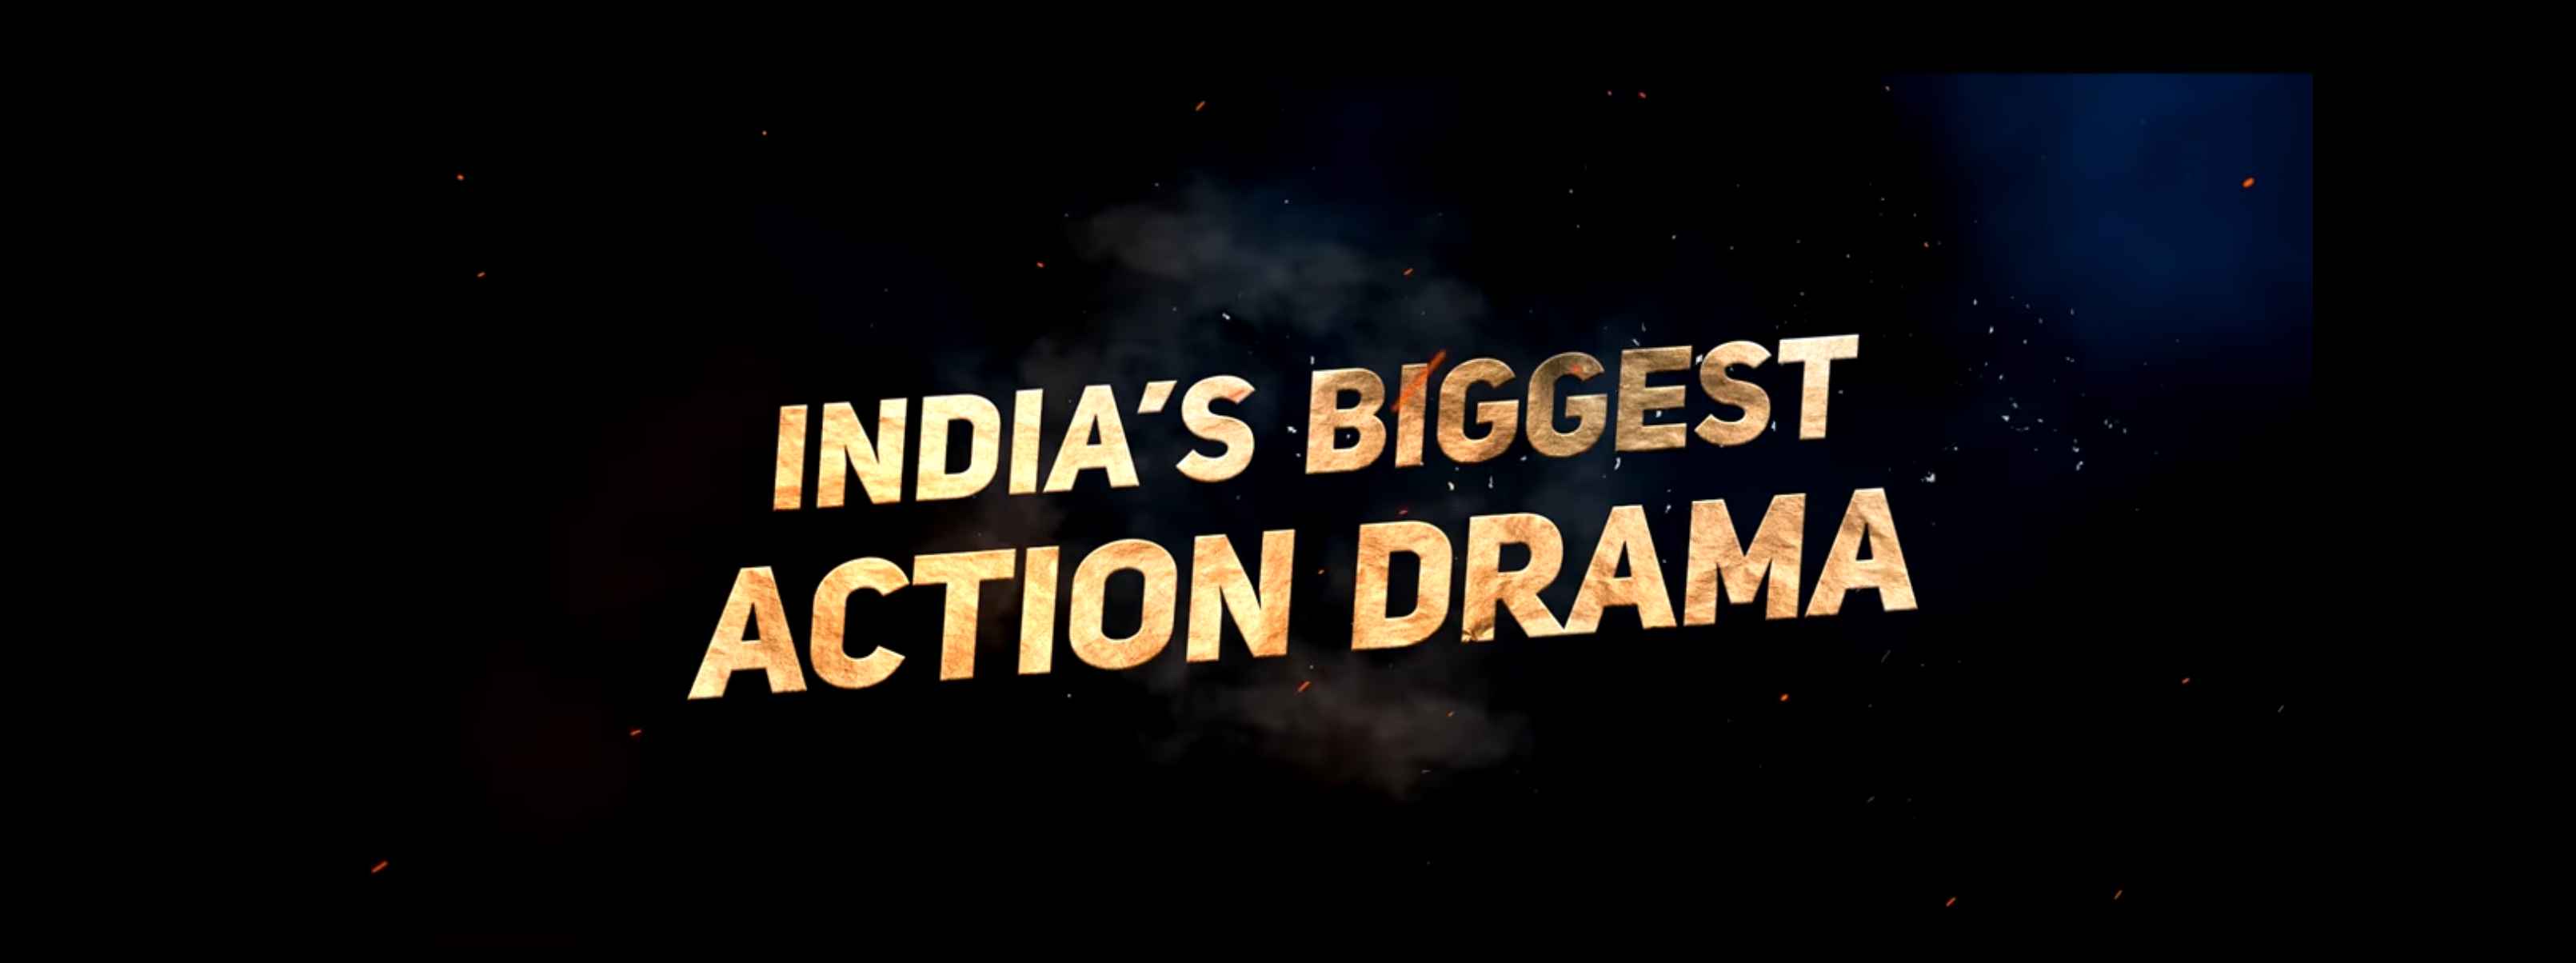 Roar of RRR India Biggest Action Drama Movie 2021